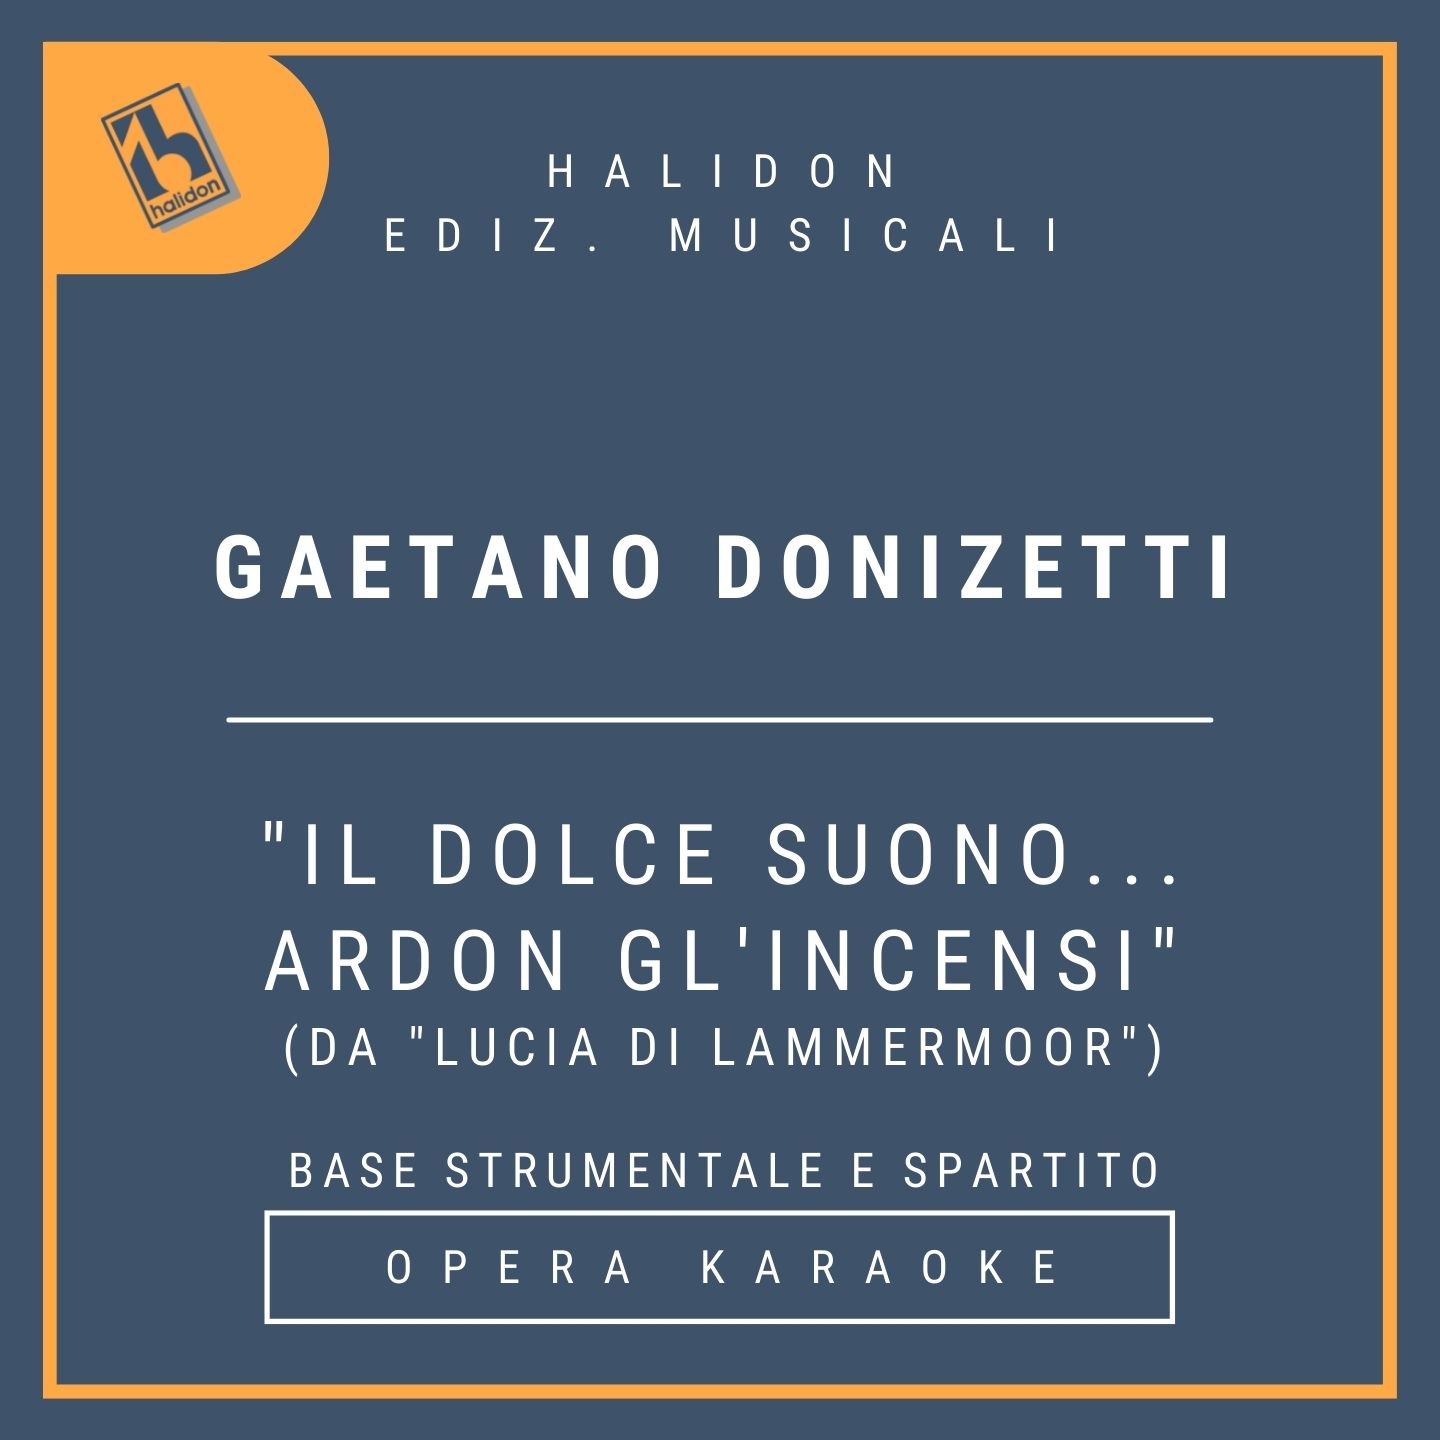 Gaetano Donizetti - Il dolce suono... Ardon gl'incensi (from 'Lucia di Lammermoor') - Lucia's Aria and madness scene (coloratura soprano) - Instrumental track + sheet